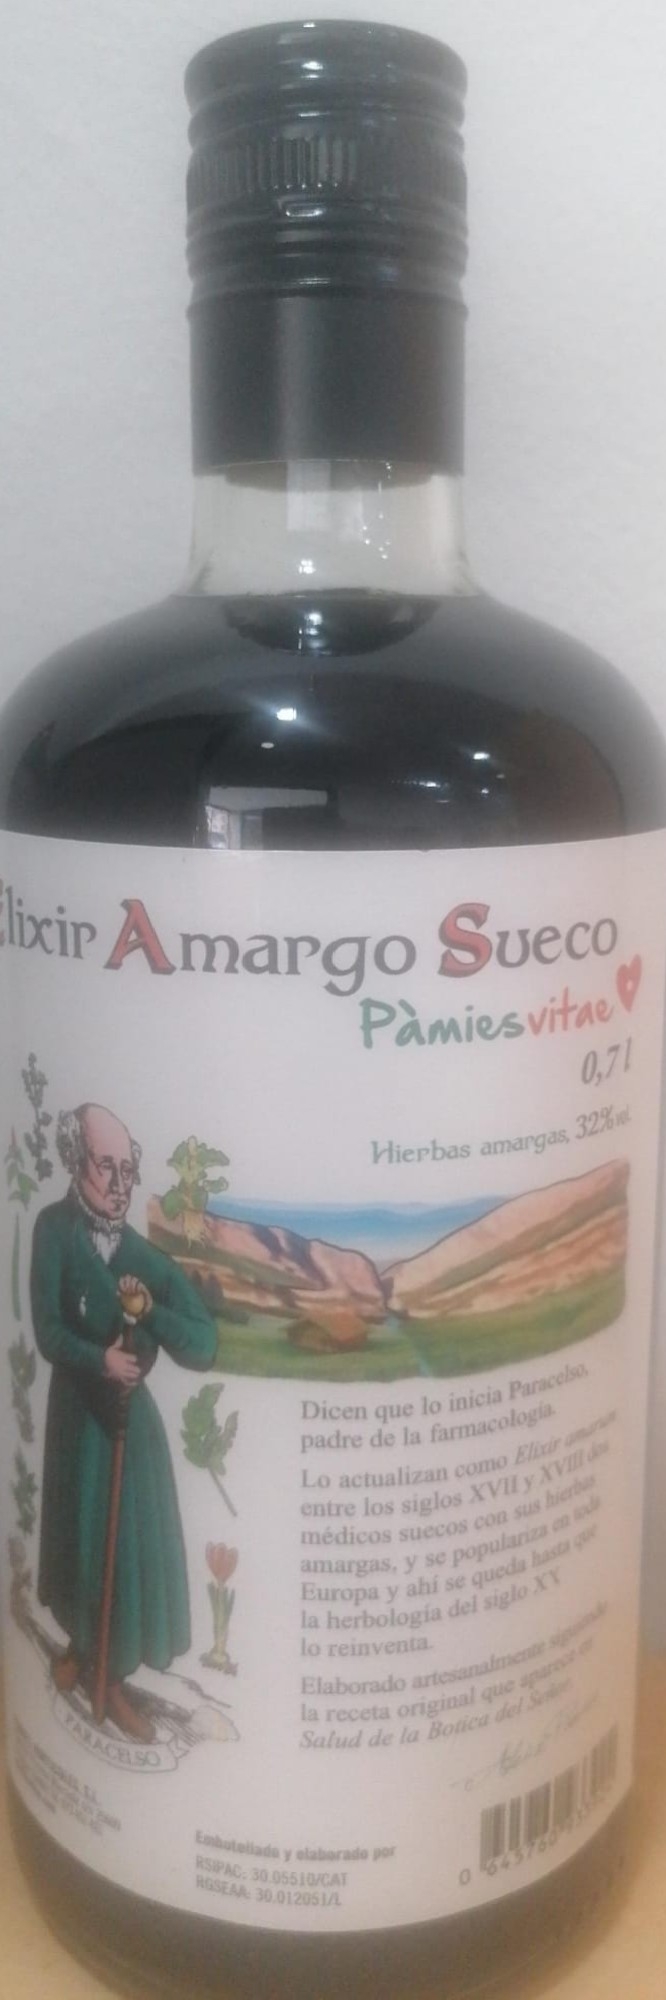 Elixir Amargo Sueco Pamies Vitae 700 Ml